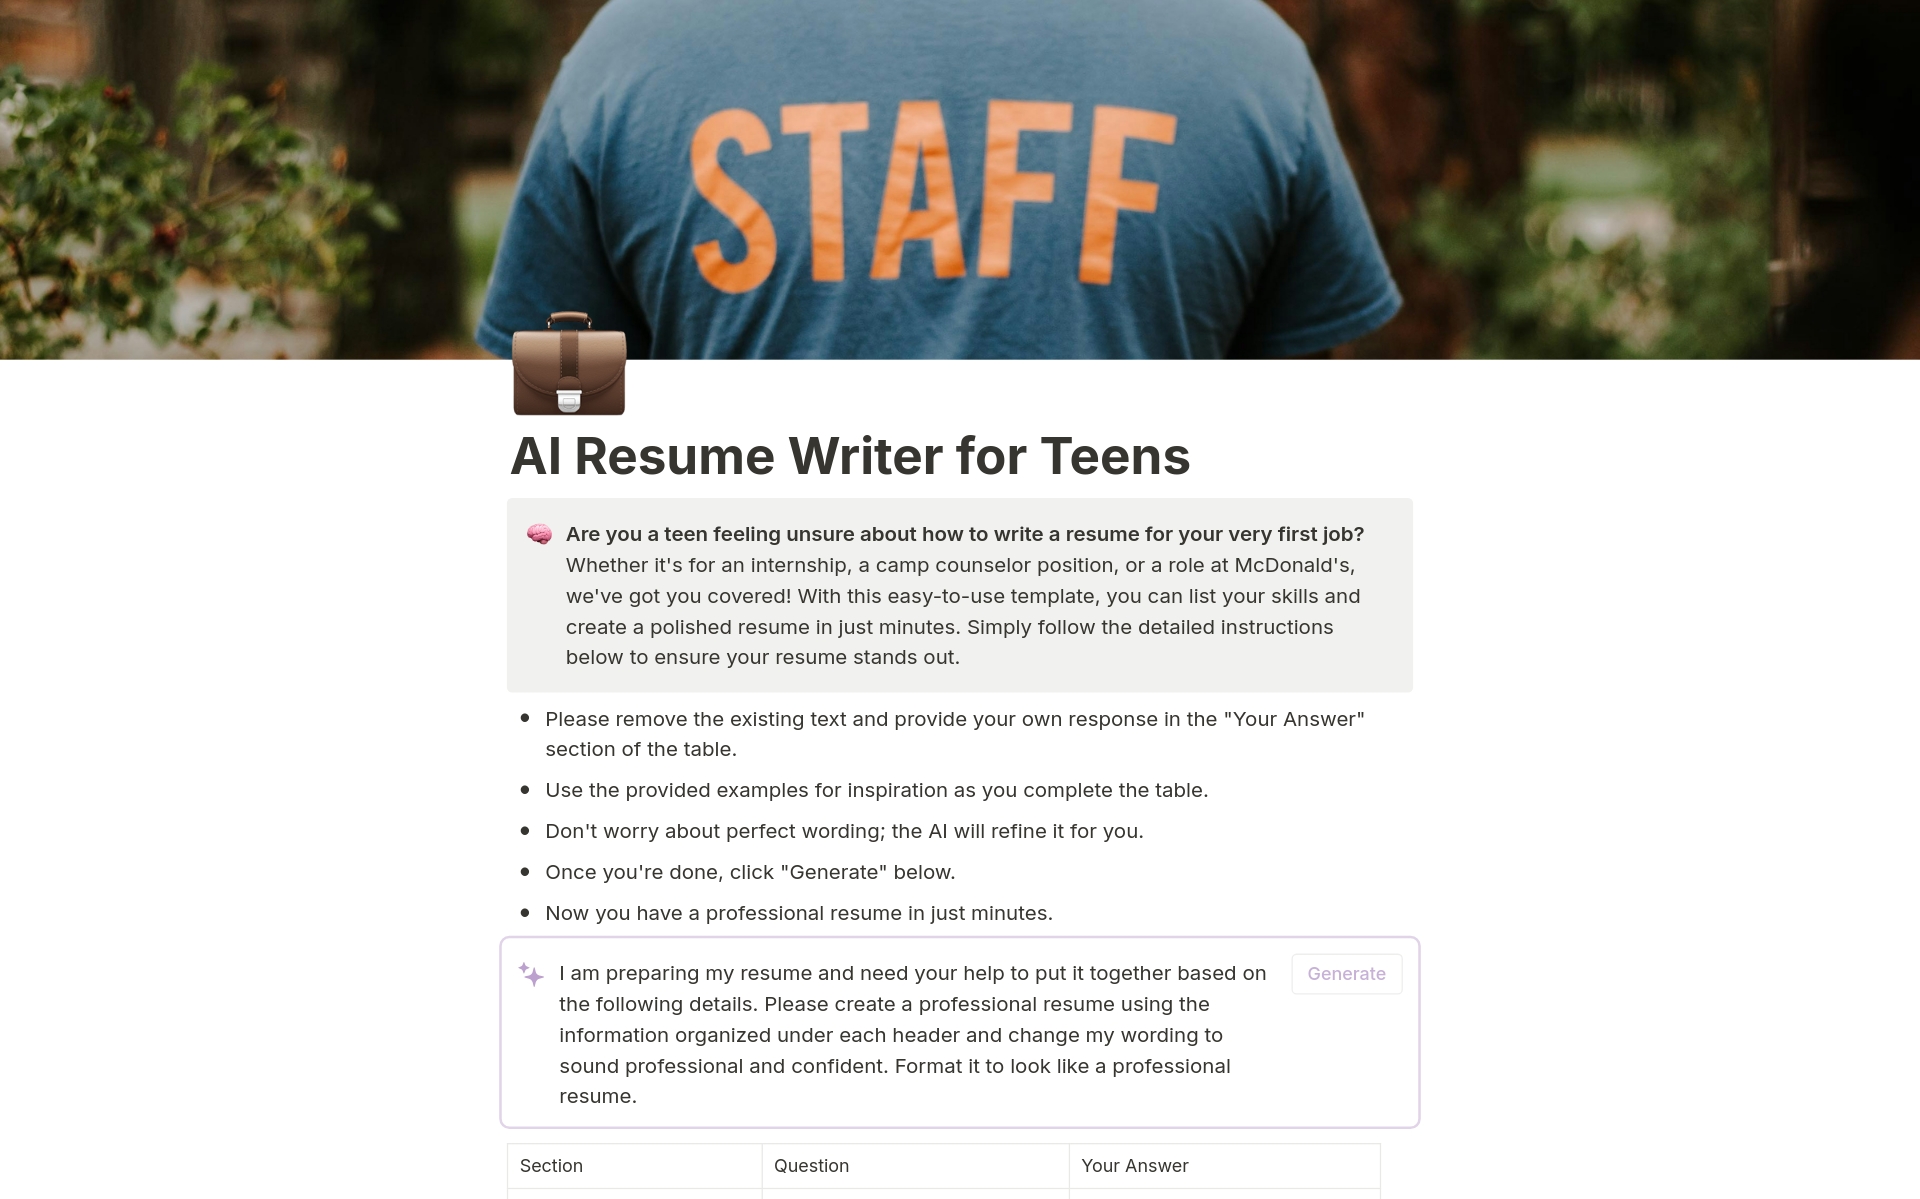 Uma prévia do modelo para AI Resume Writer for Teens